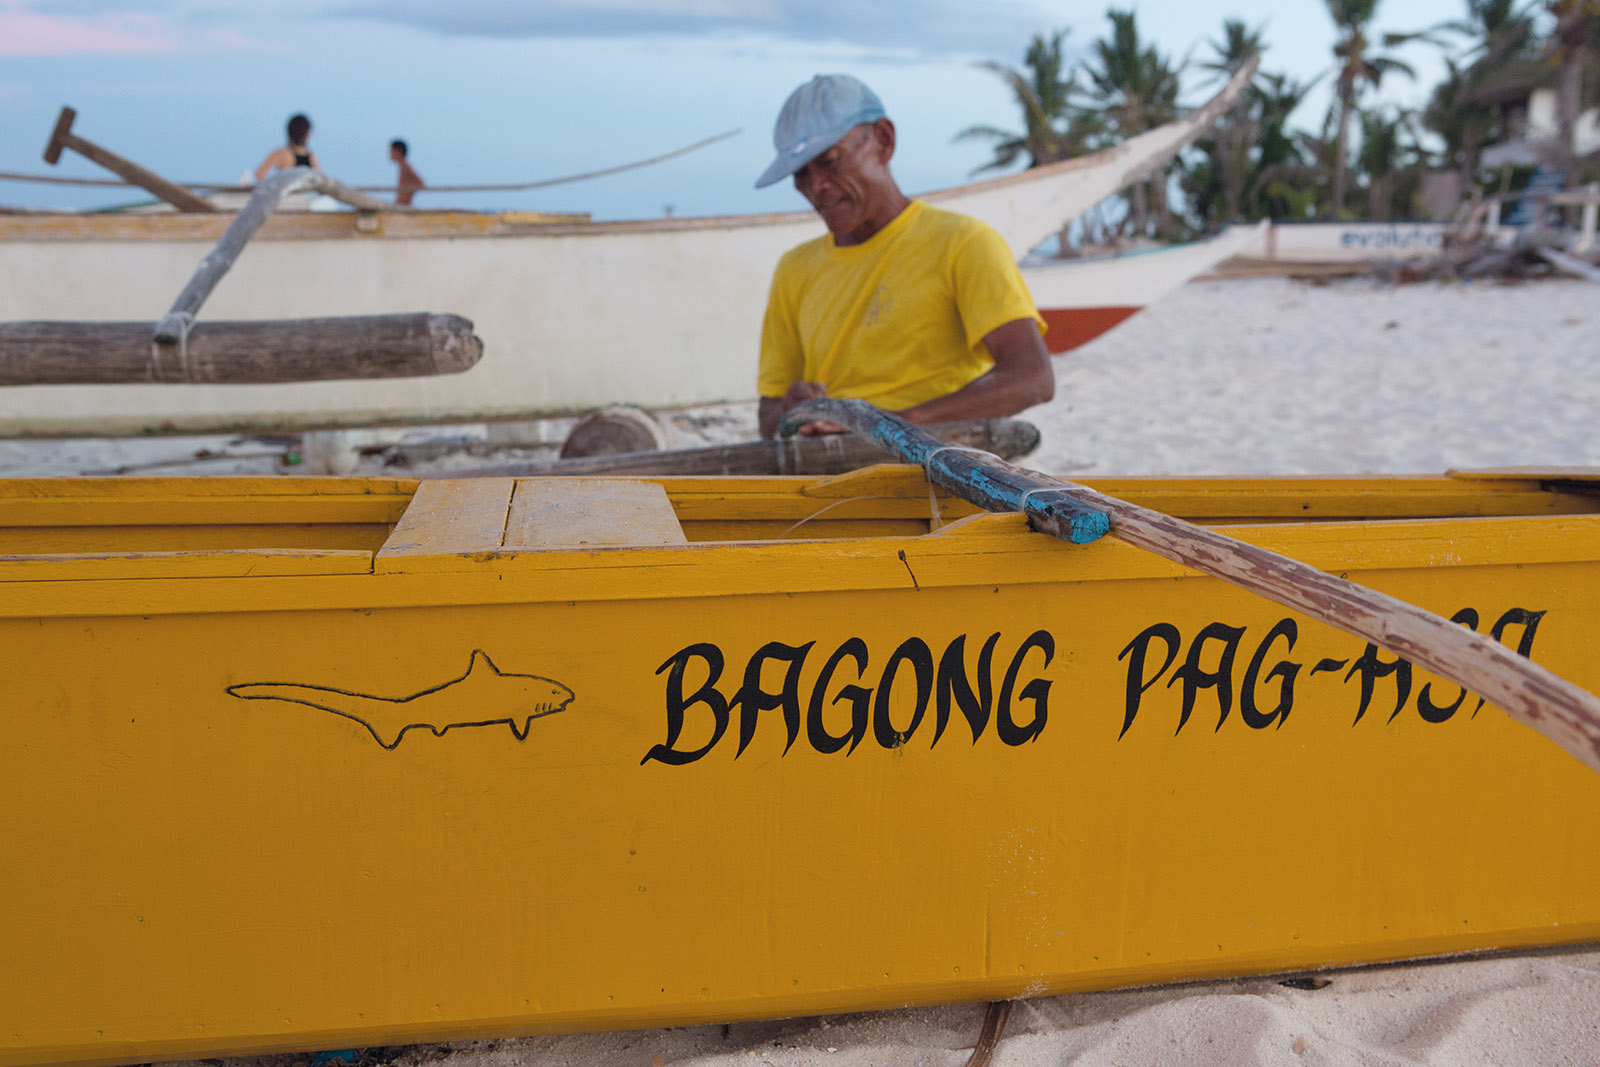 Philippines, Bagon Pag-Asa boat